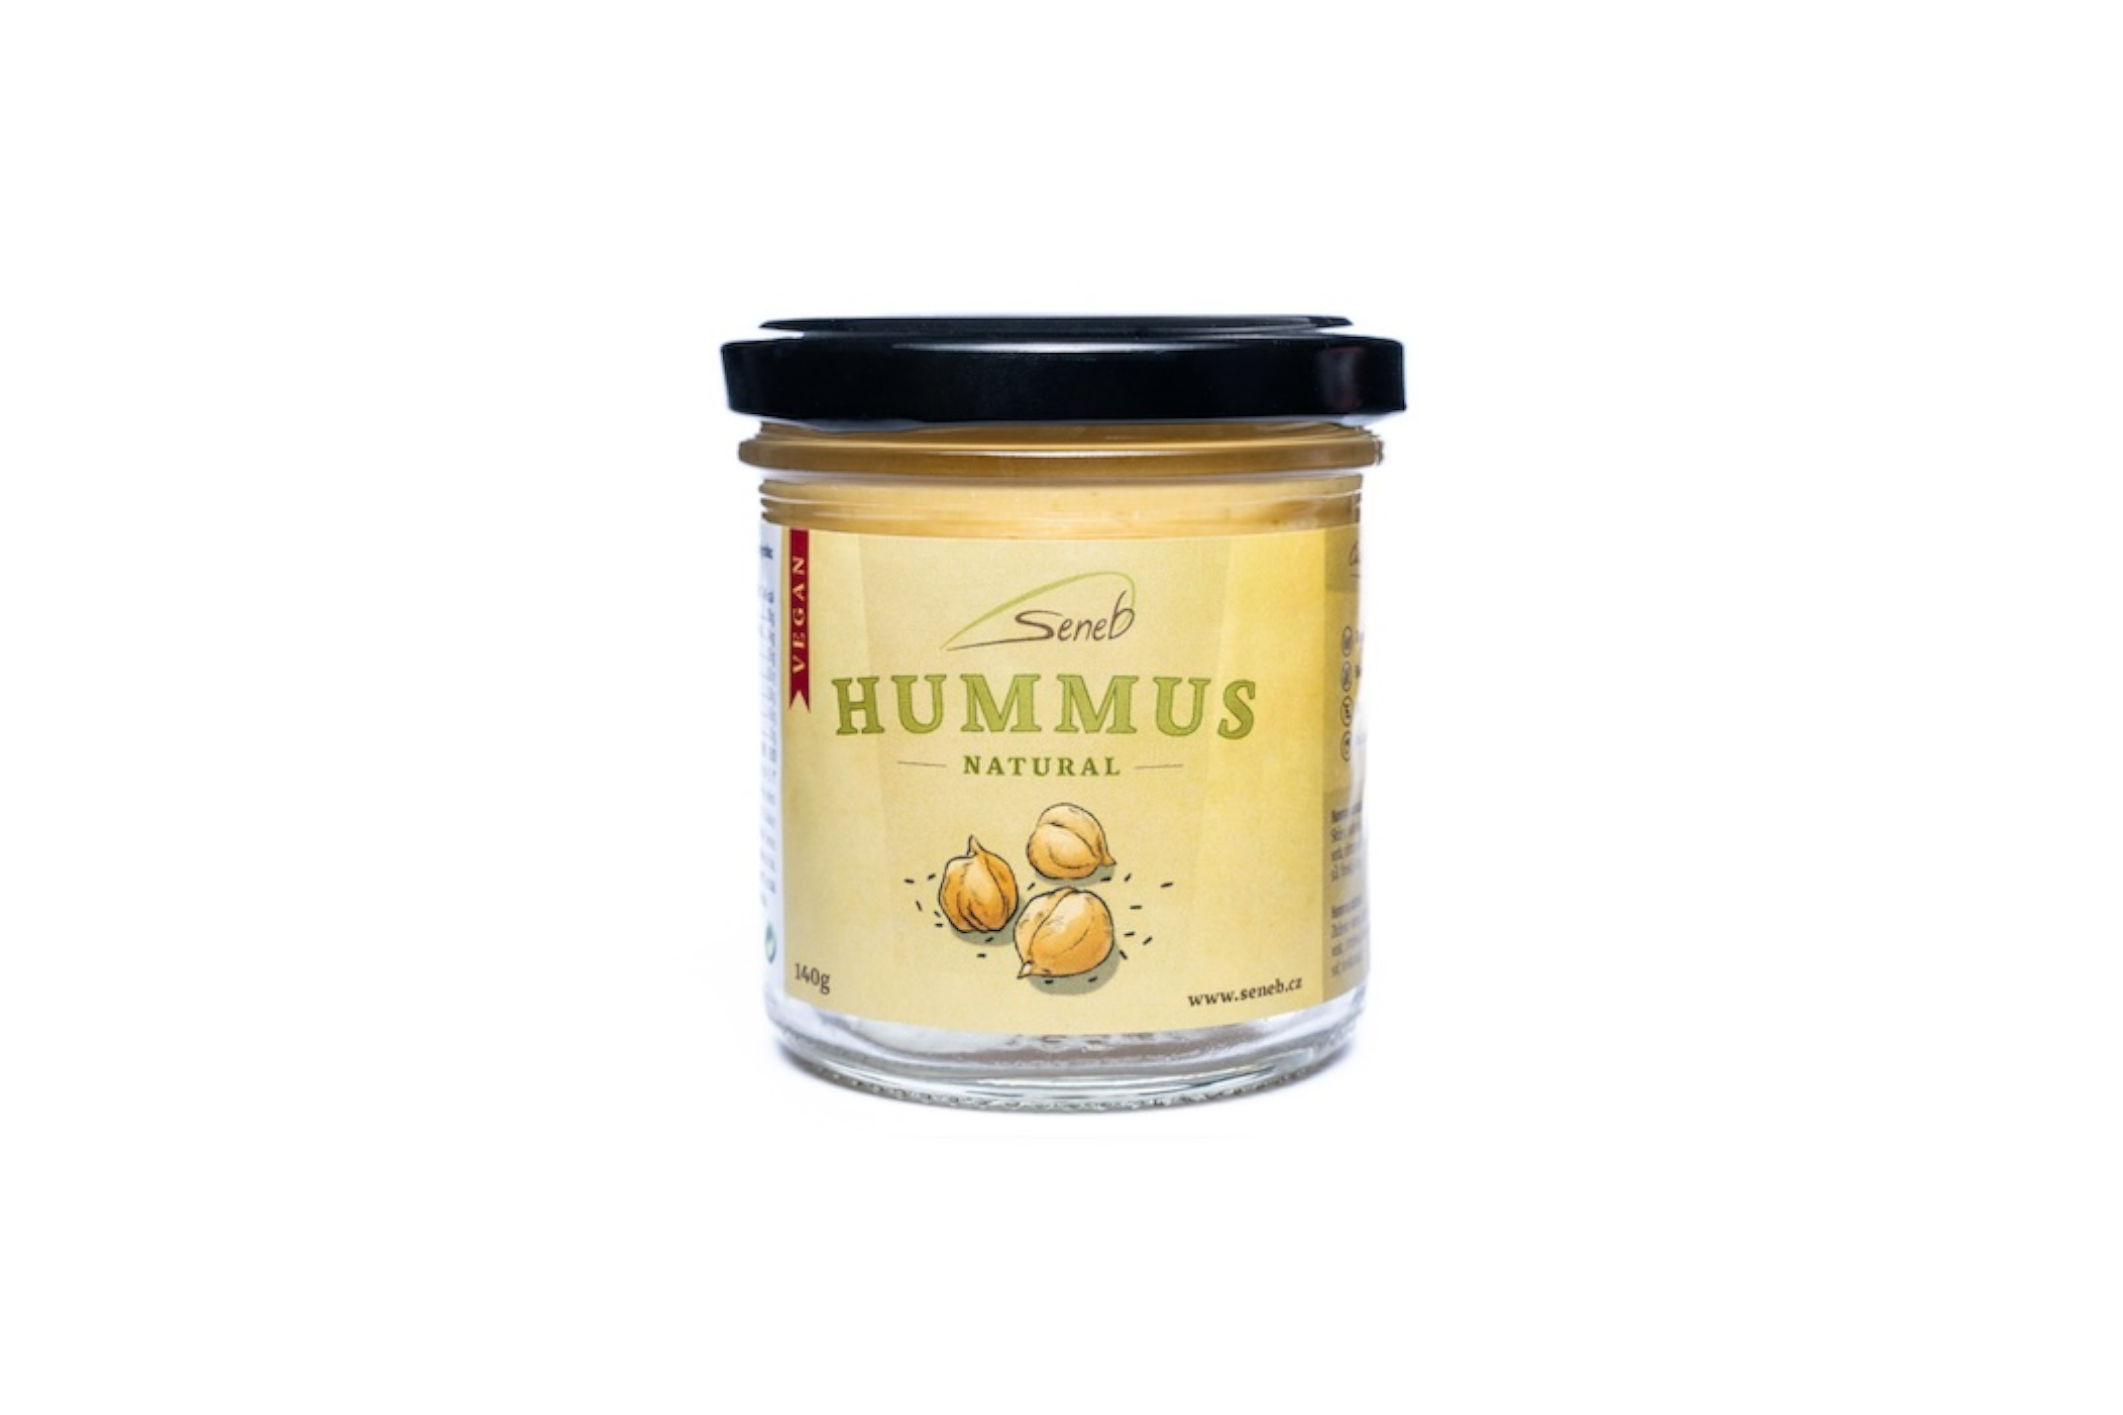 Natural Jihlava Hummus natural - Seneb 140g